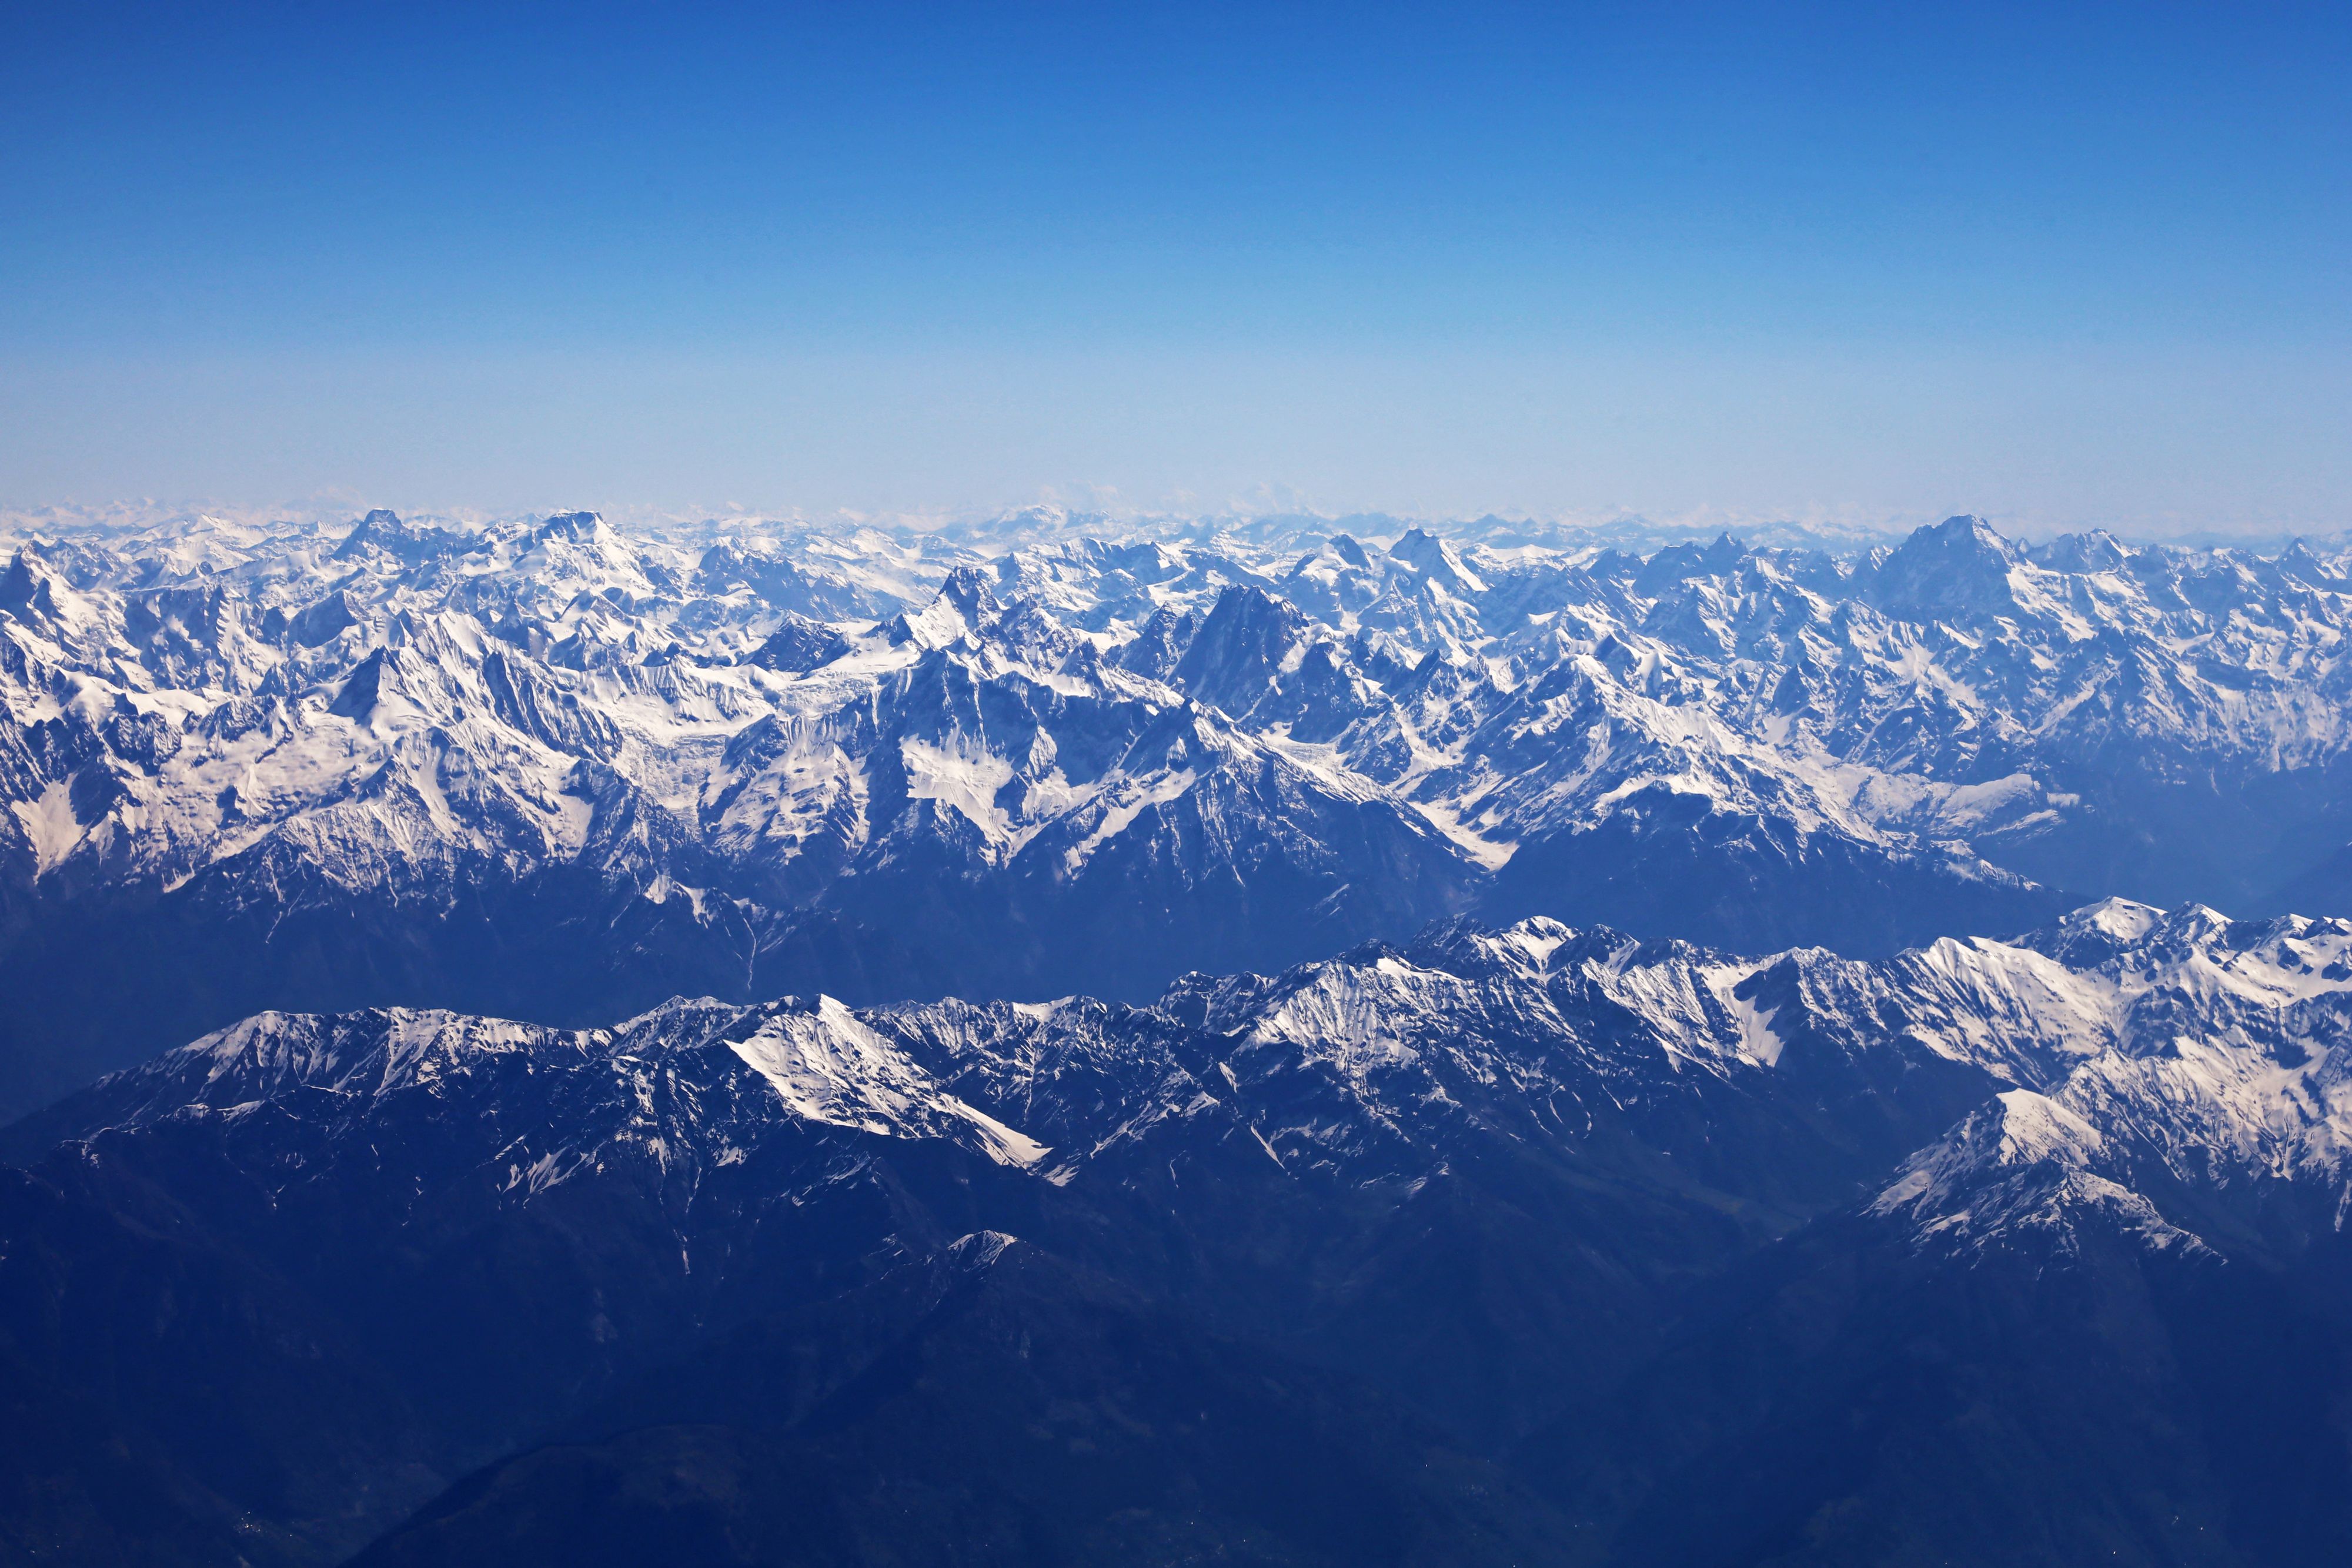 Risque de manque d'eau vu le peu de neige sur l'Himalaya